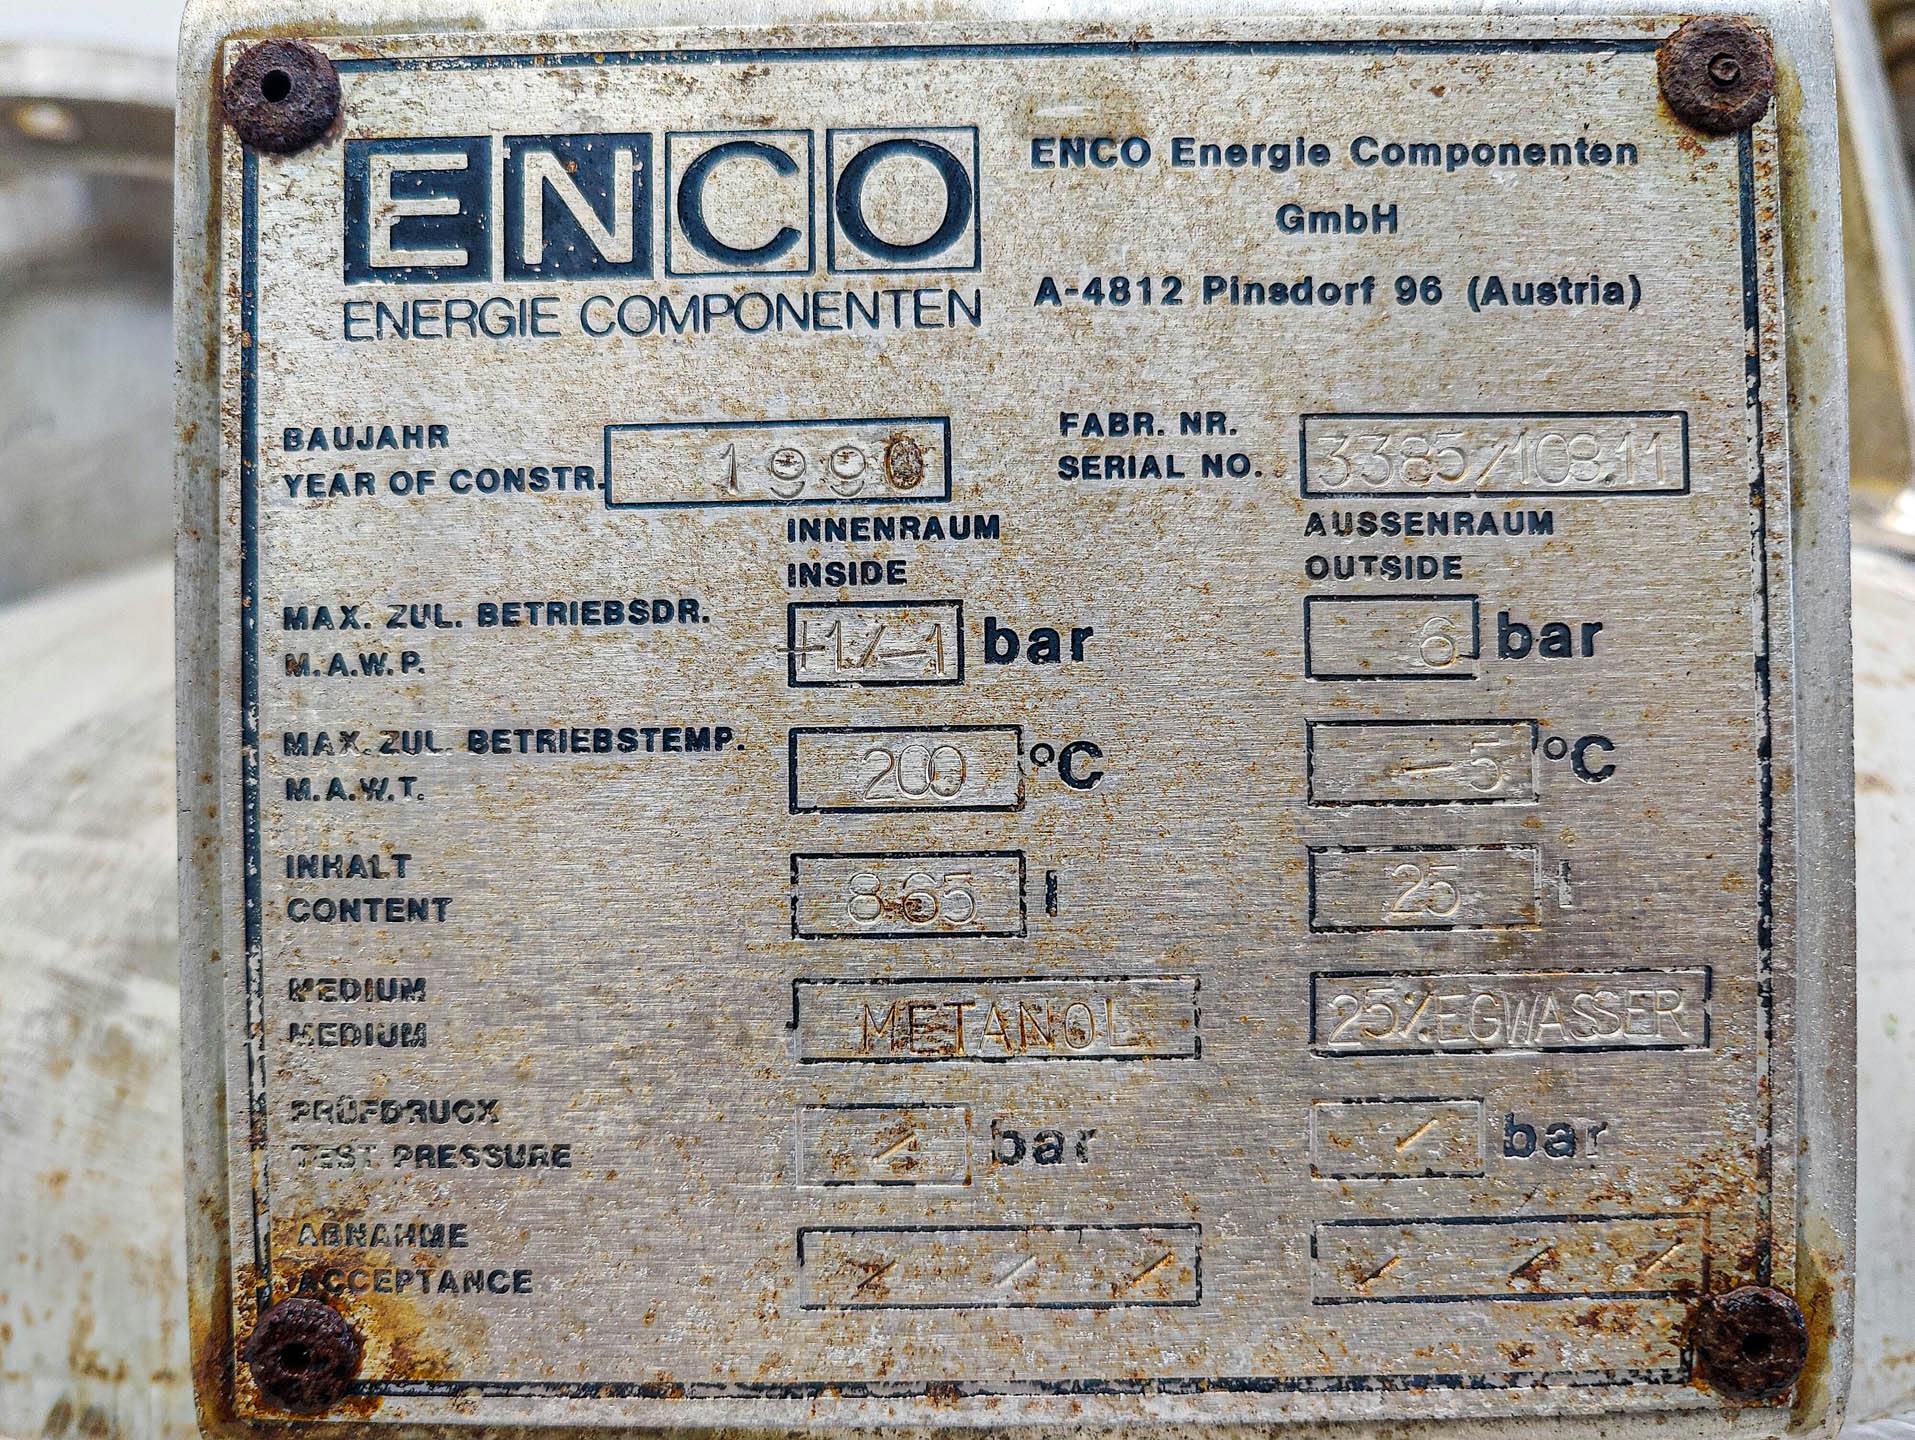 Enco 865 Ltr. - Recipiente de presión - image 8